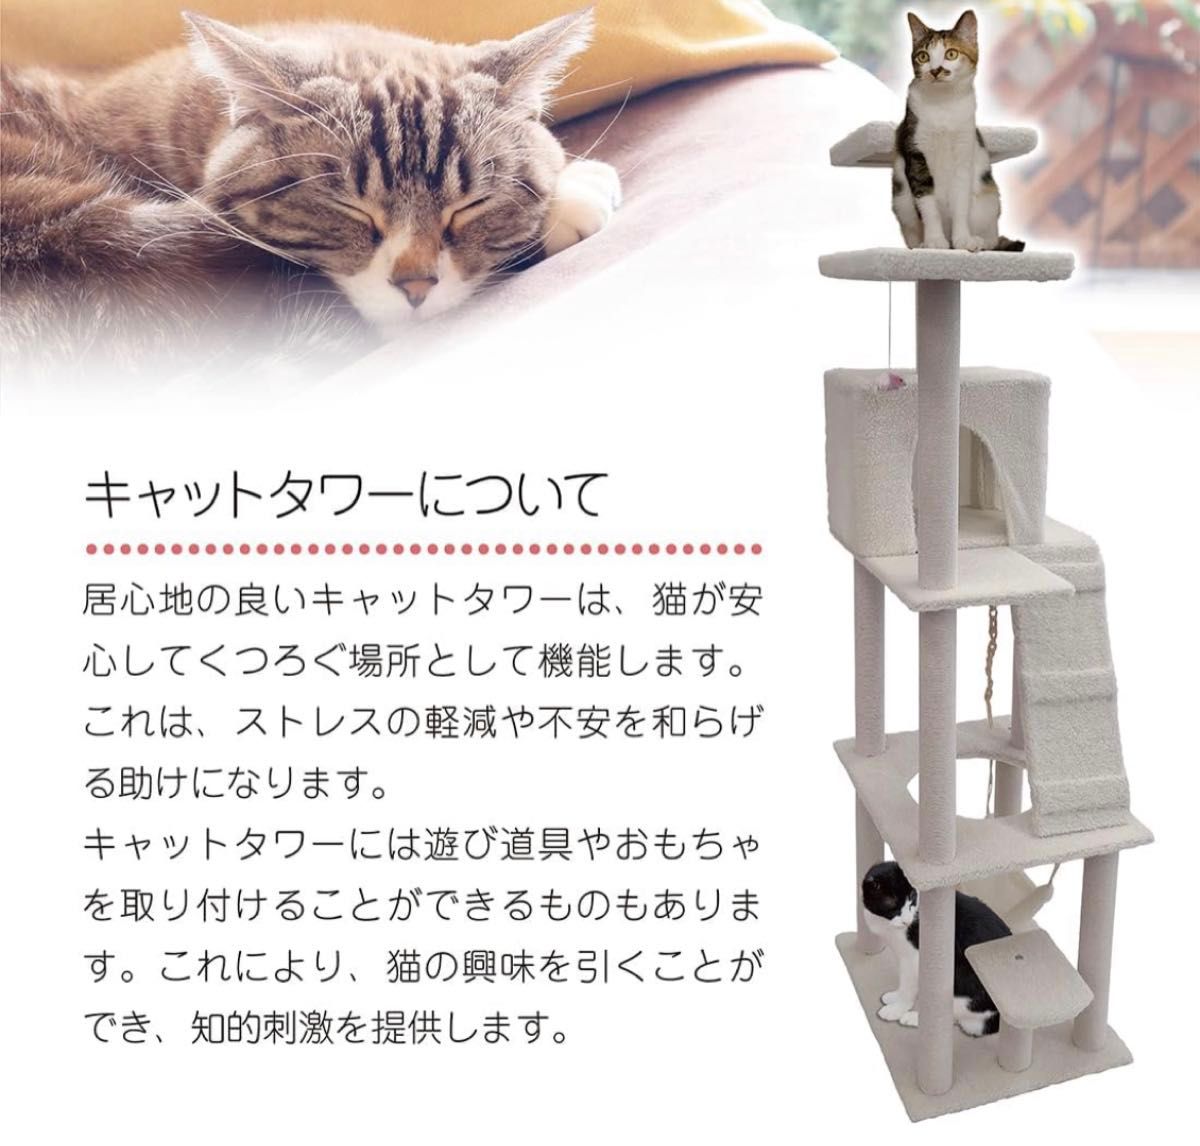 キャットタワー 猫タワー 大型猫用 スリム 多頭飼い ハンモック付き 据え置き型 高さ185cm